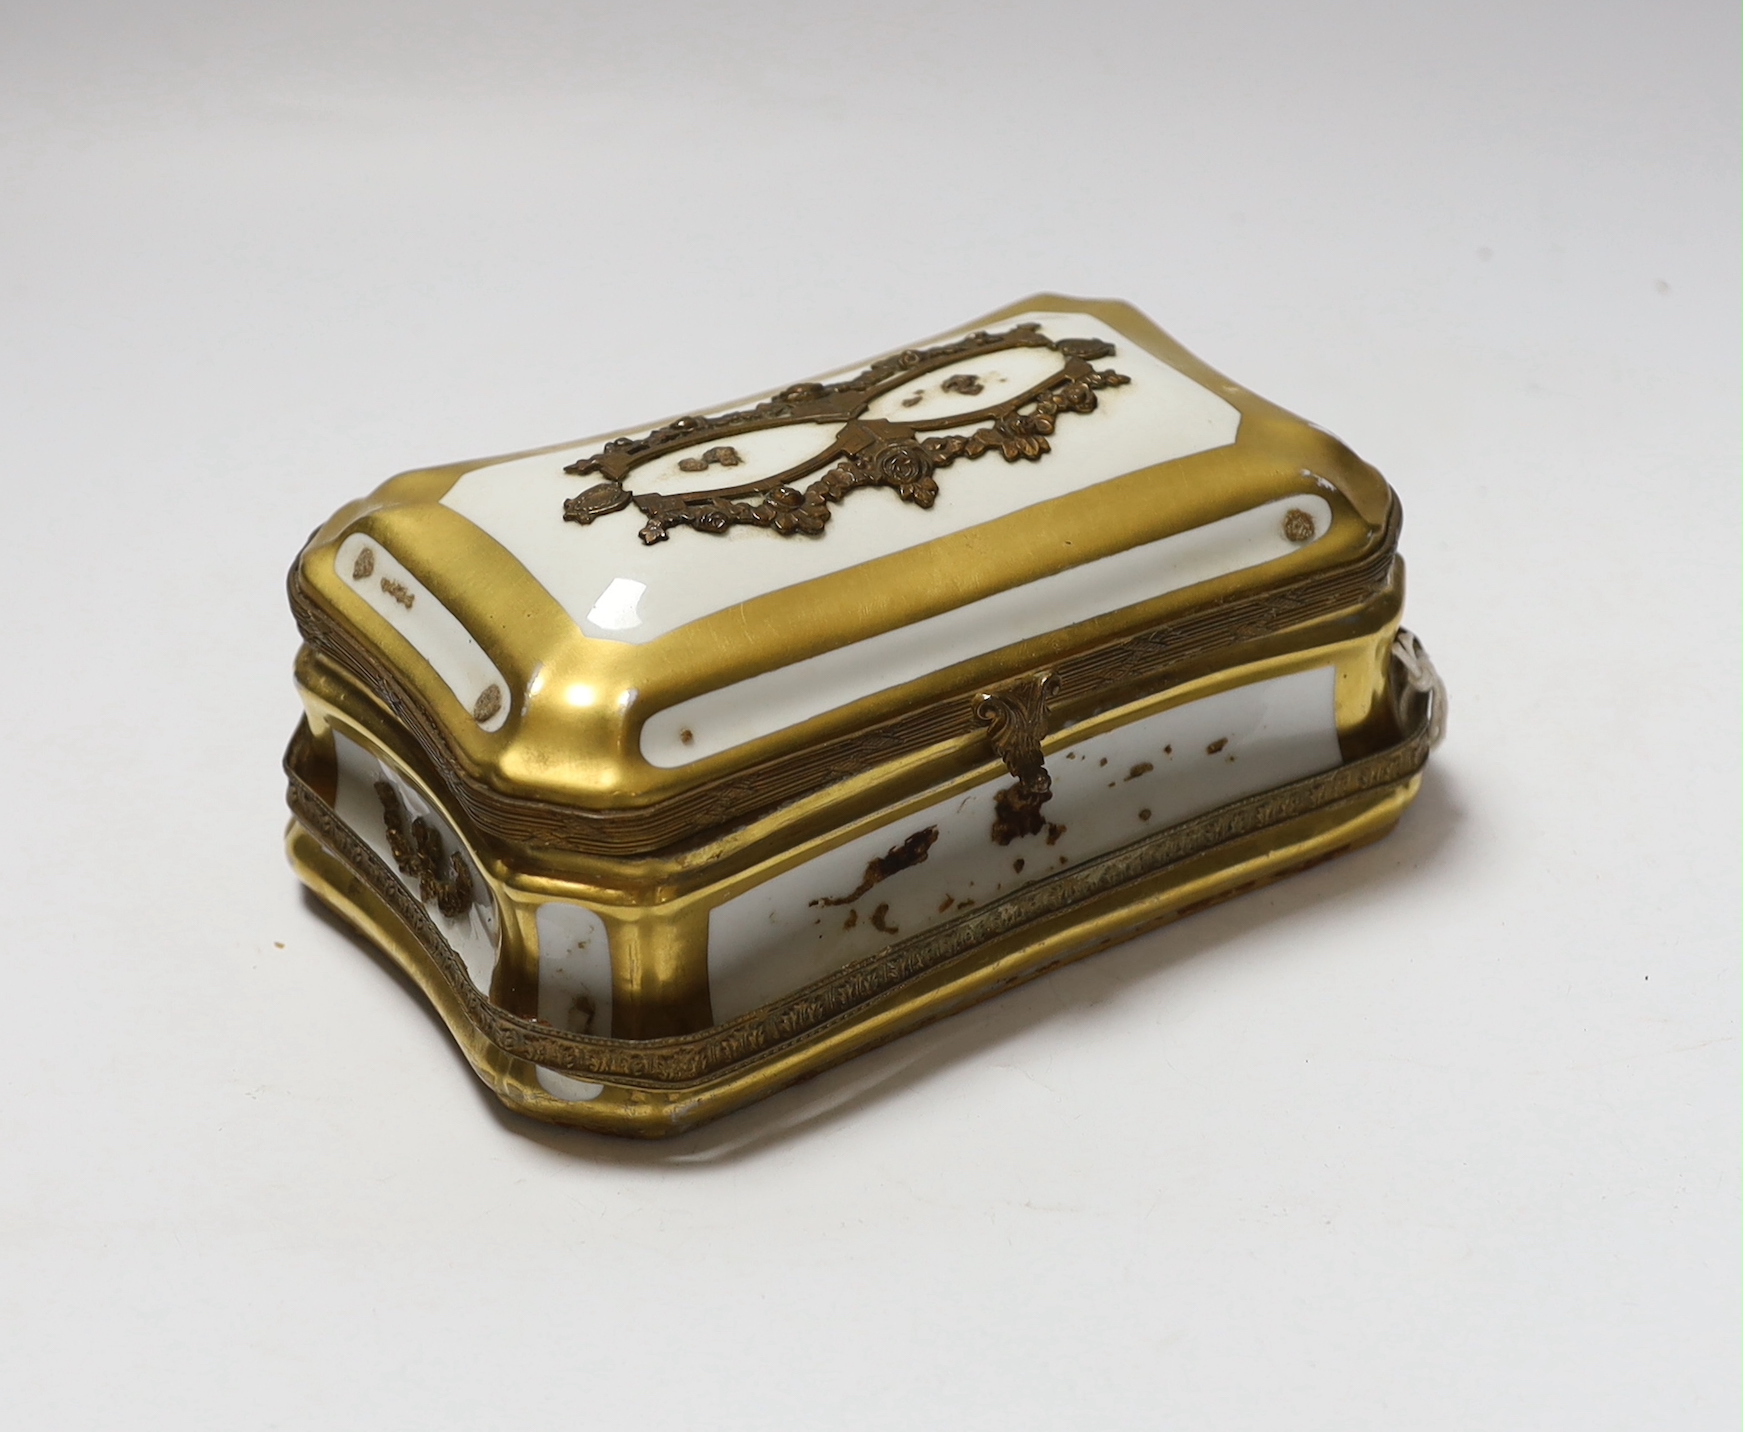 A Sevres style porcelain casket